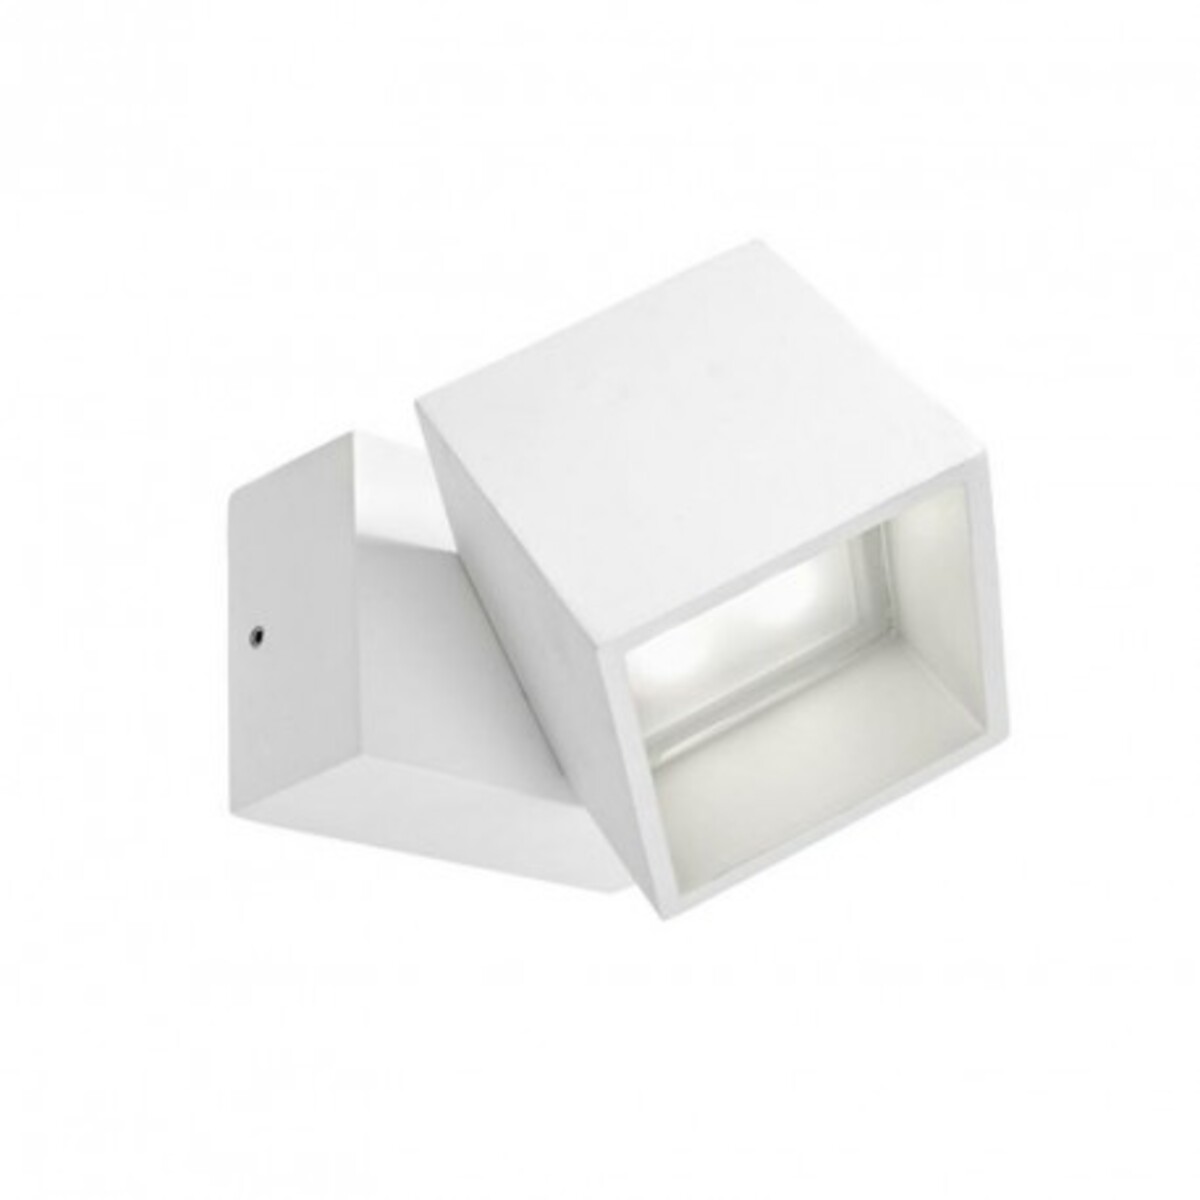 Applique extérieure carrée pivotable Cubus LED IP65 - Blanc